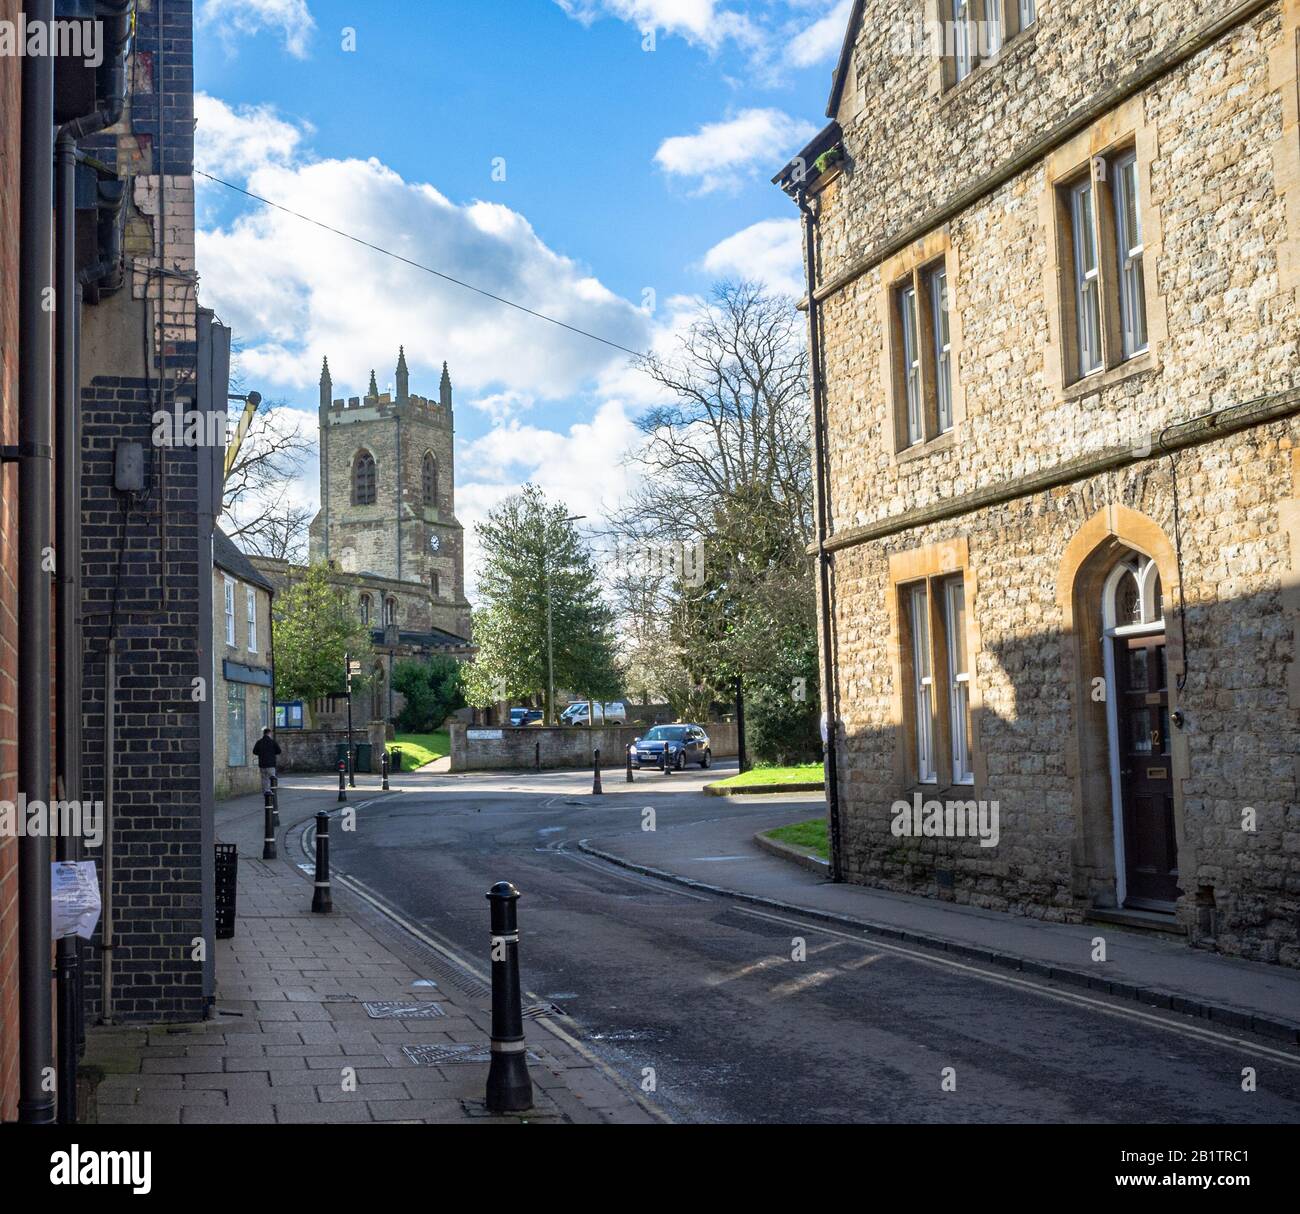 ST Edburgs Kirche, an der Kreuzung von Church Street und Causeway, Bicester, Oxfordshire, Großbritannien, Wurde An einem sonnigen Tag, im späten Winter, Erschossen. Blaues Auto nähert sich. Stockfoto